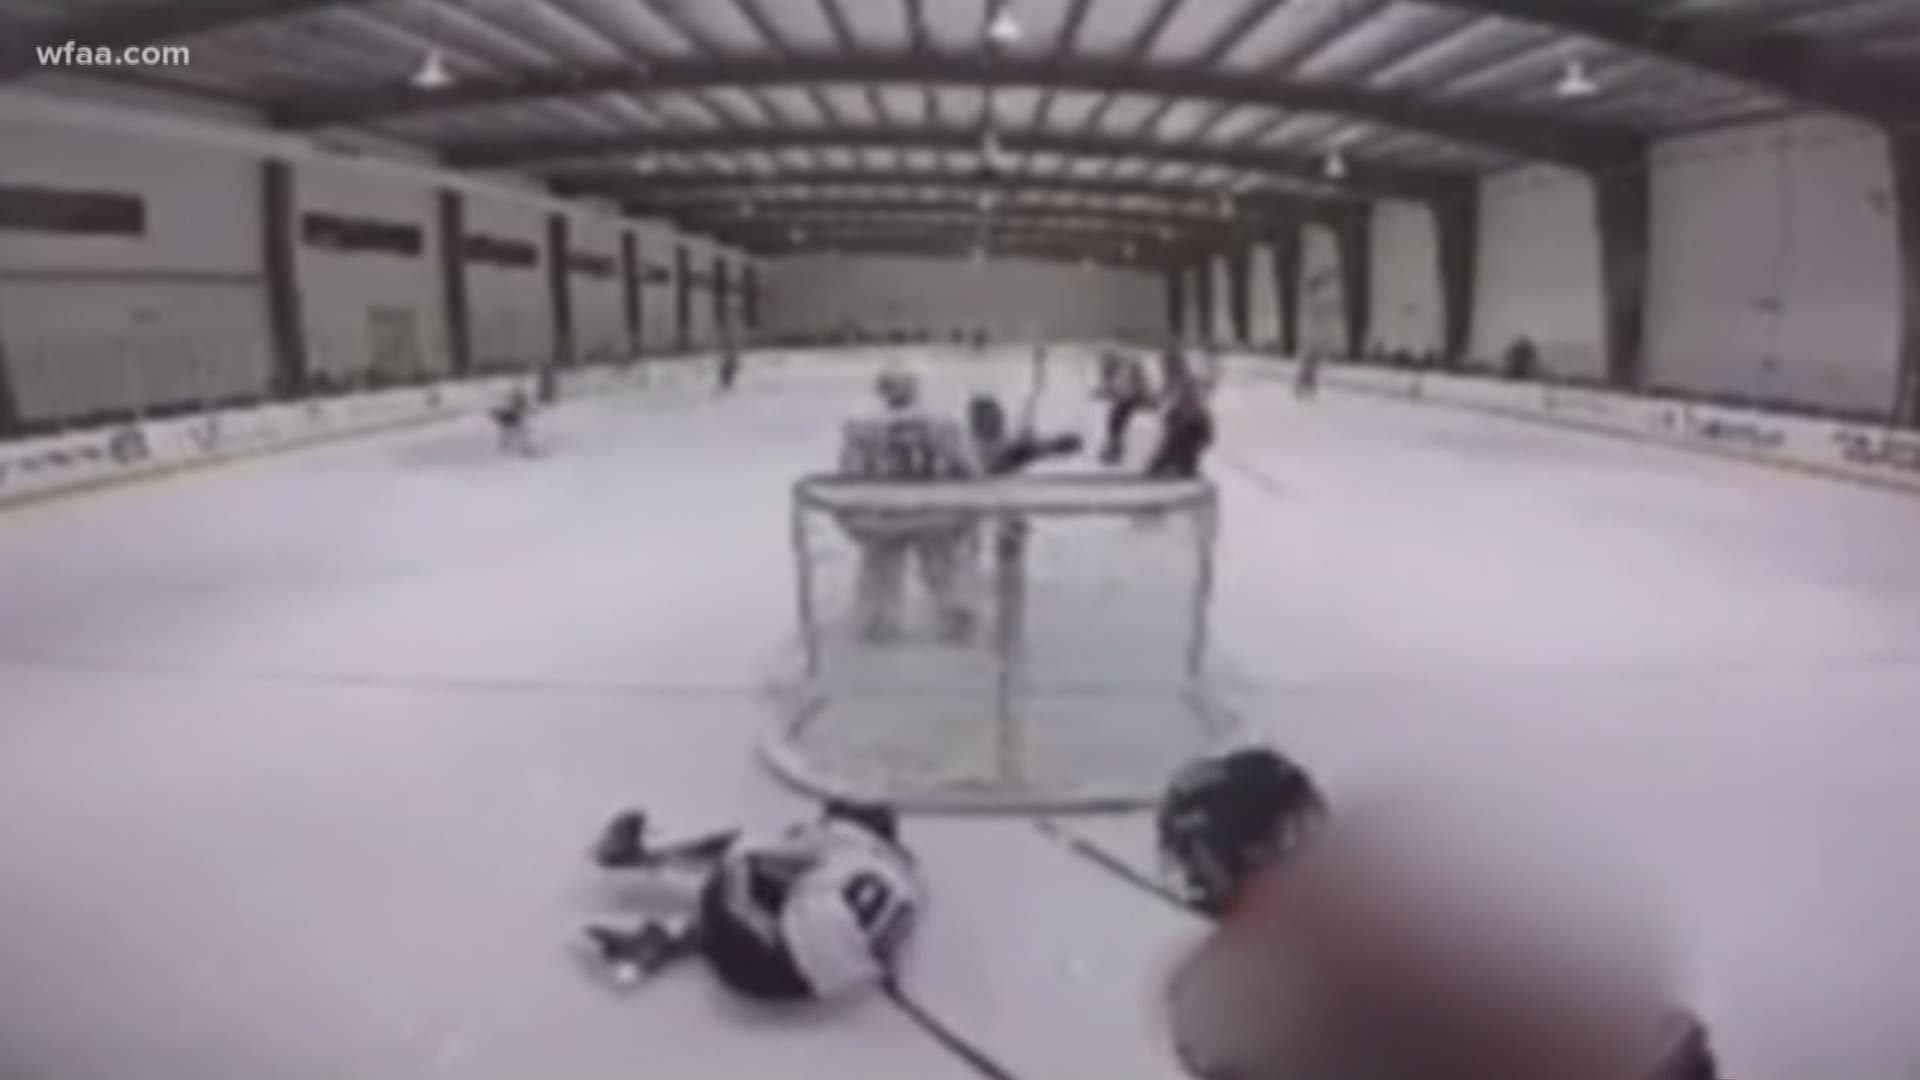 High school hockey attack caught on camera